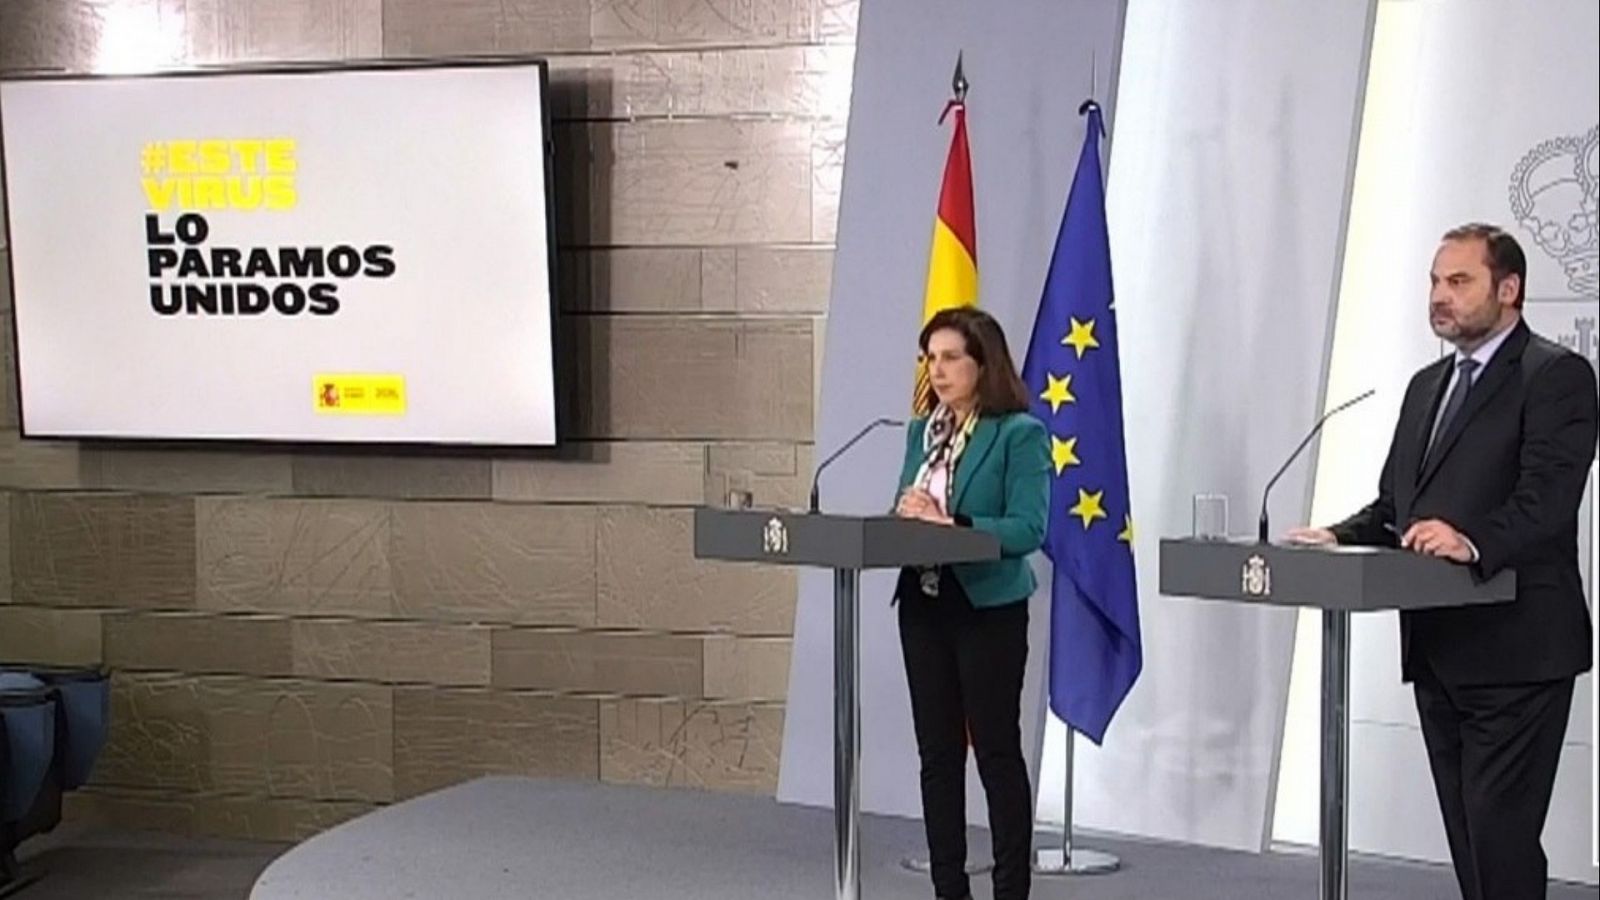 Especial informativo - Coronavirus. Comparecencia del ministro de Transportes y de la ministra de Defensa - 31/03/20 - RTVE.es